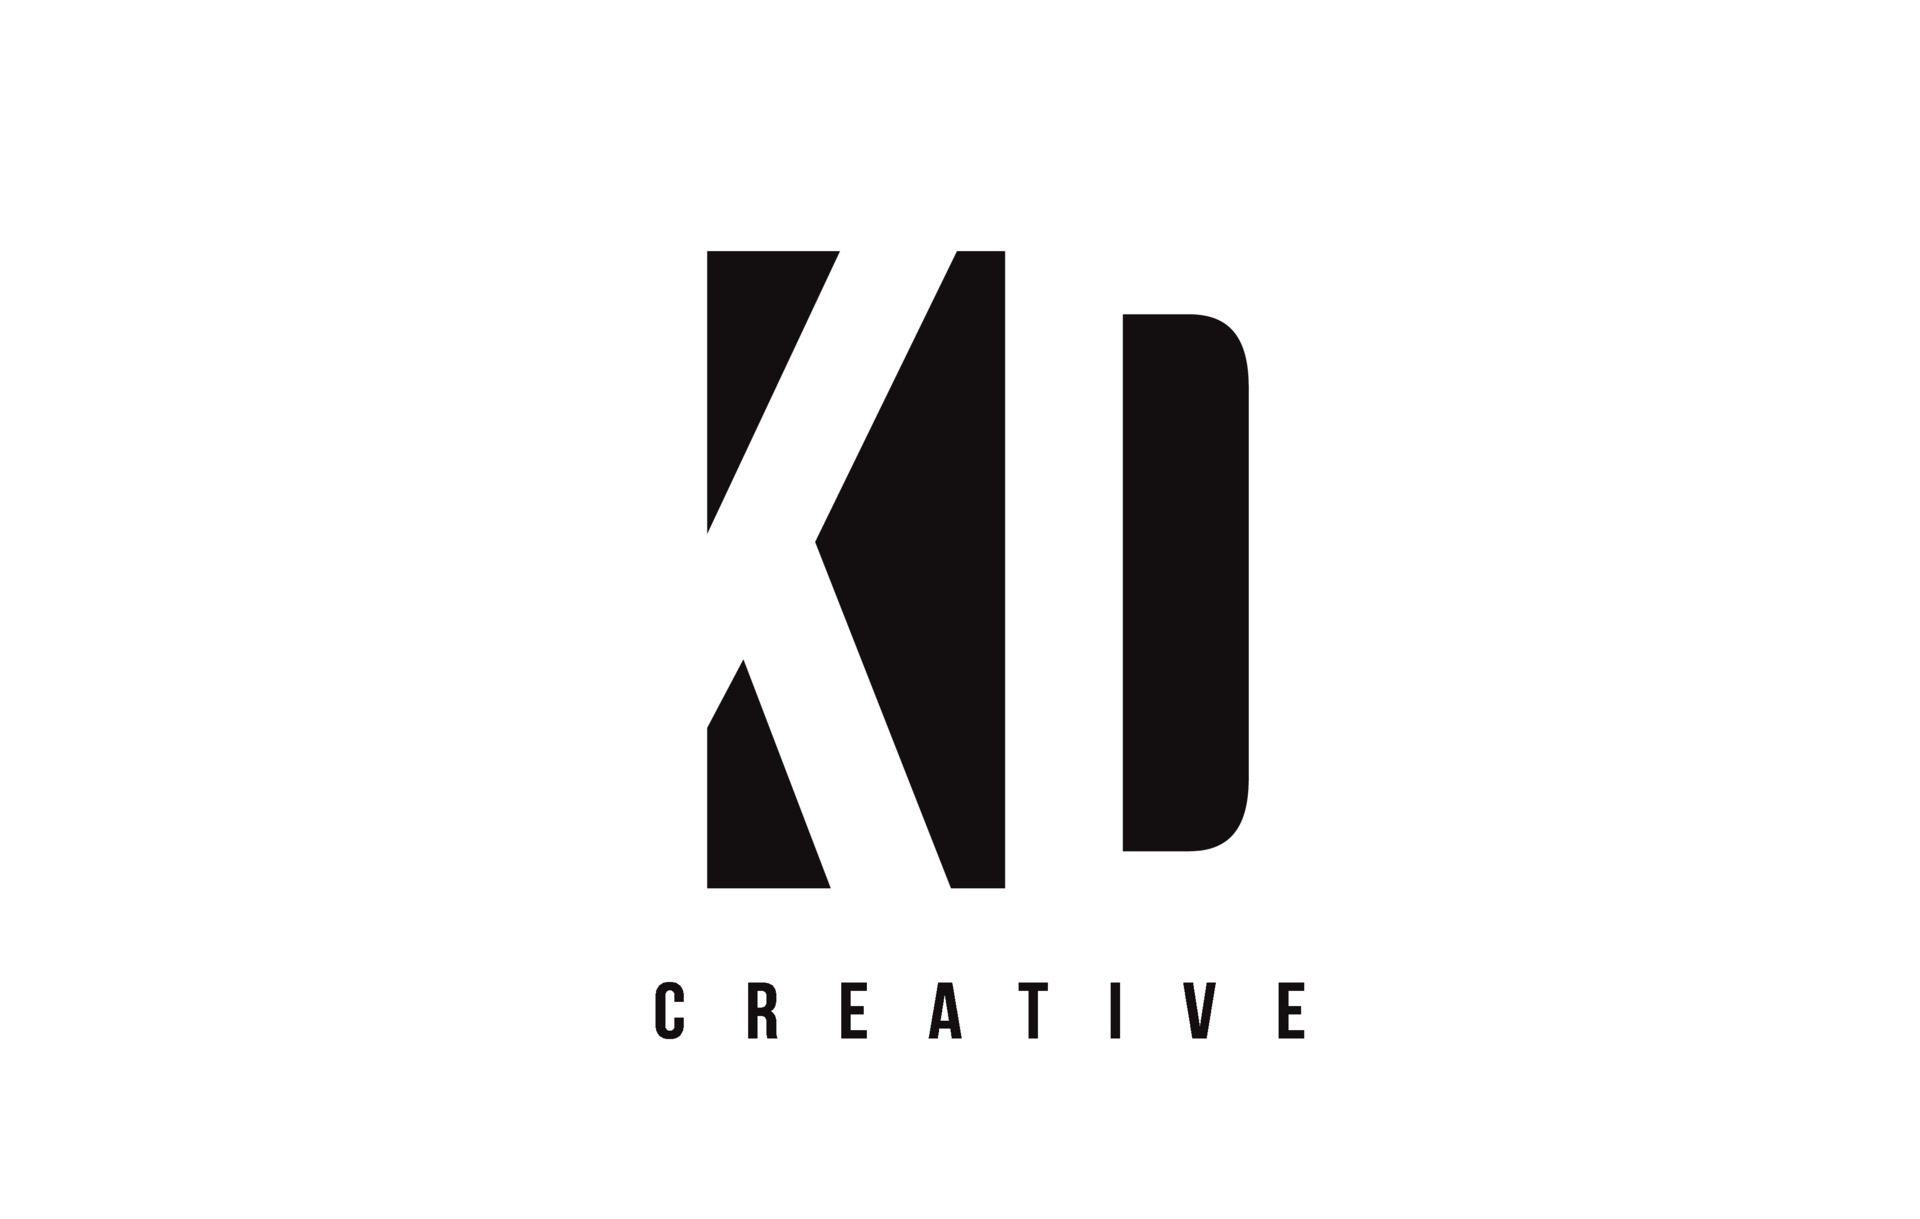 KD K D White Letter Logo Design with Black Square. 5036887 Vector Art ...